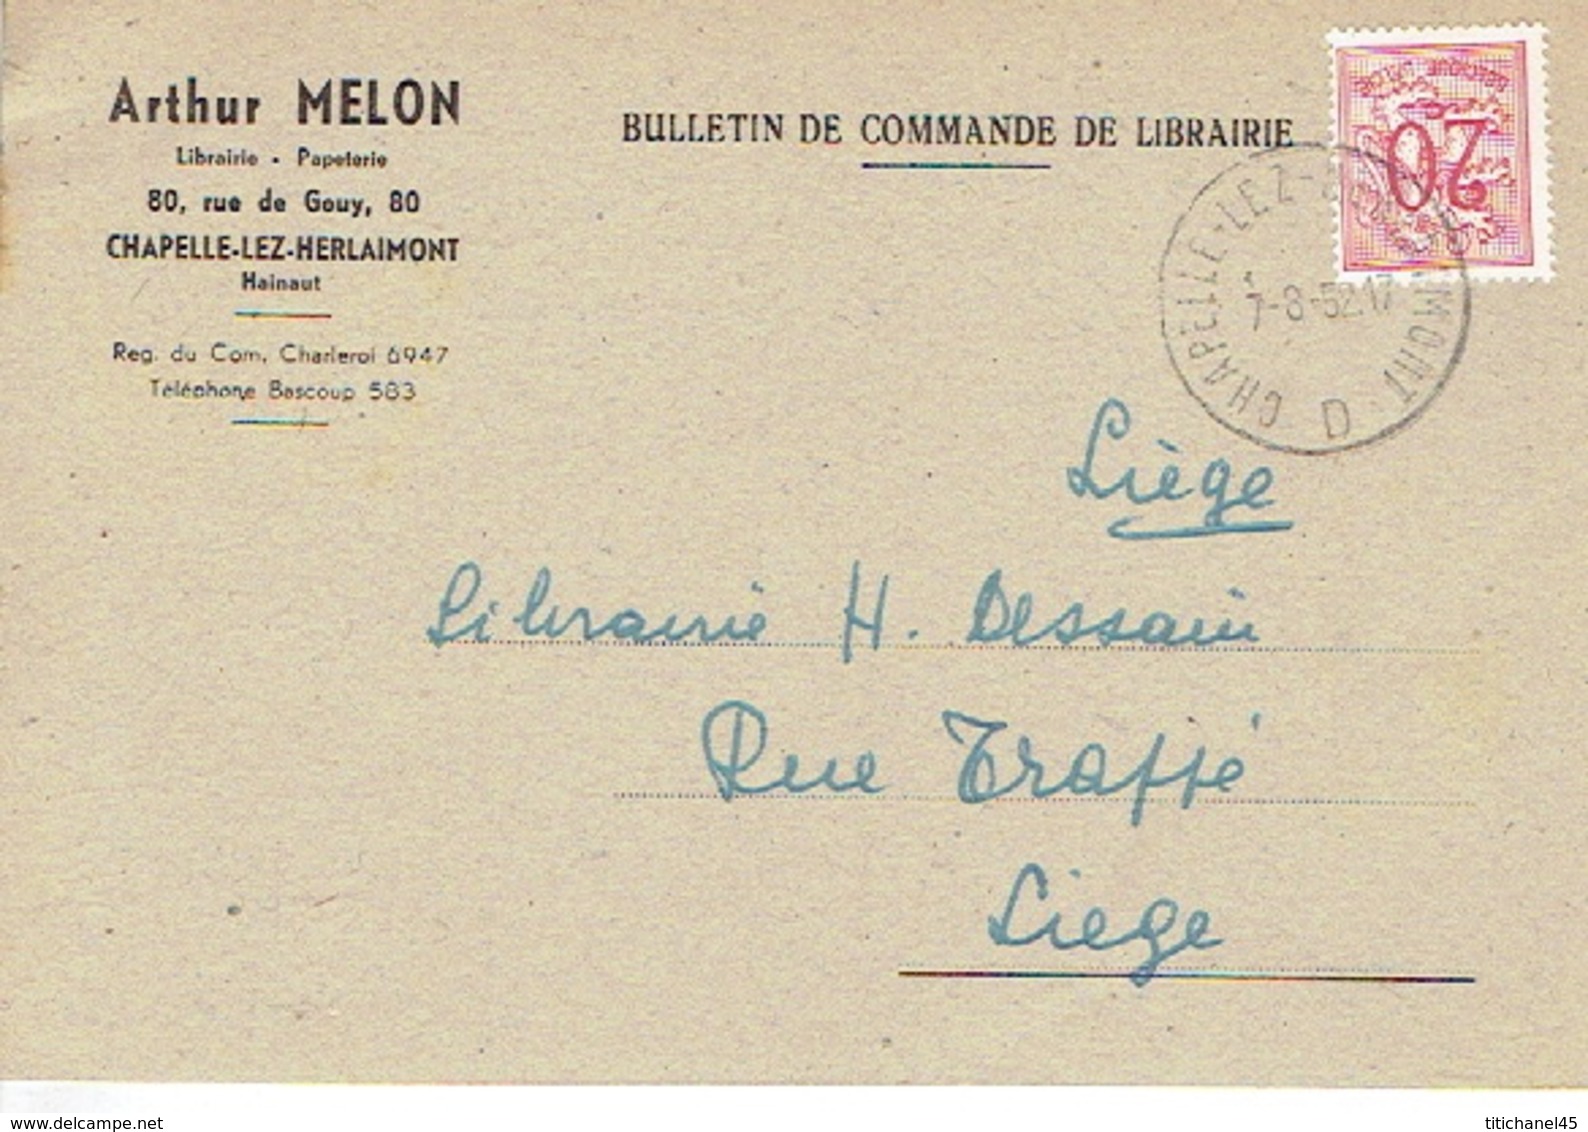 CP Publicitaire CHAPELLE-LEZ-HERLAIMONT 1952 - ARTHUR MELON - Librairie - Papeterie - Chapelle-lez-Herlaimont